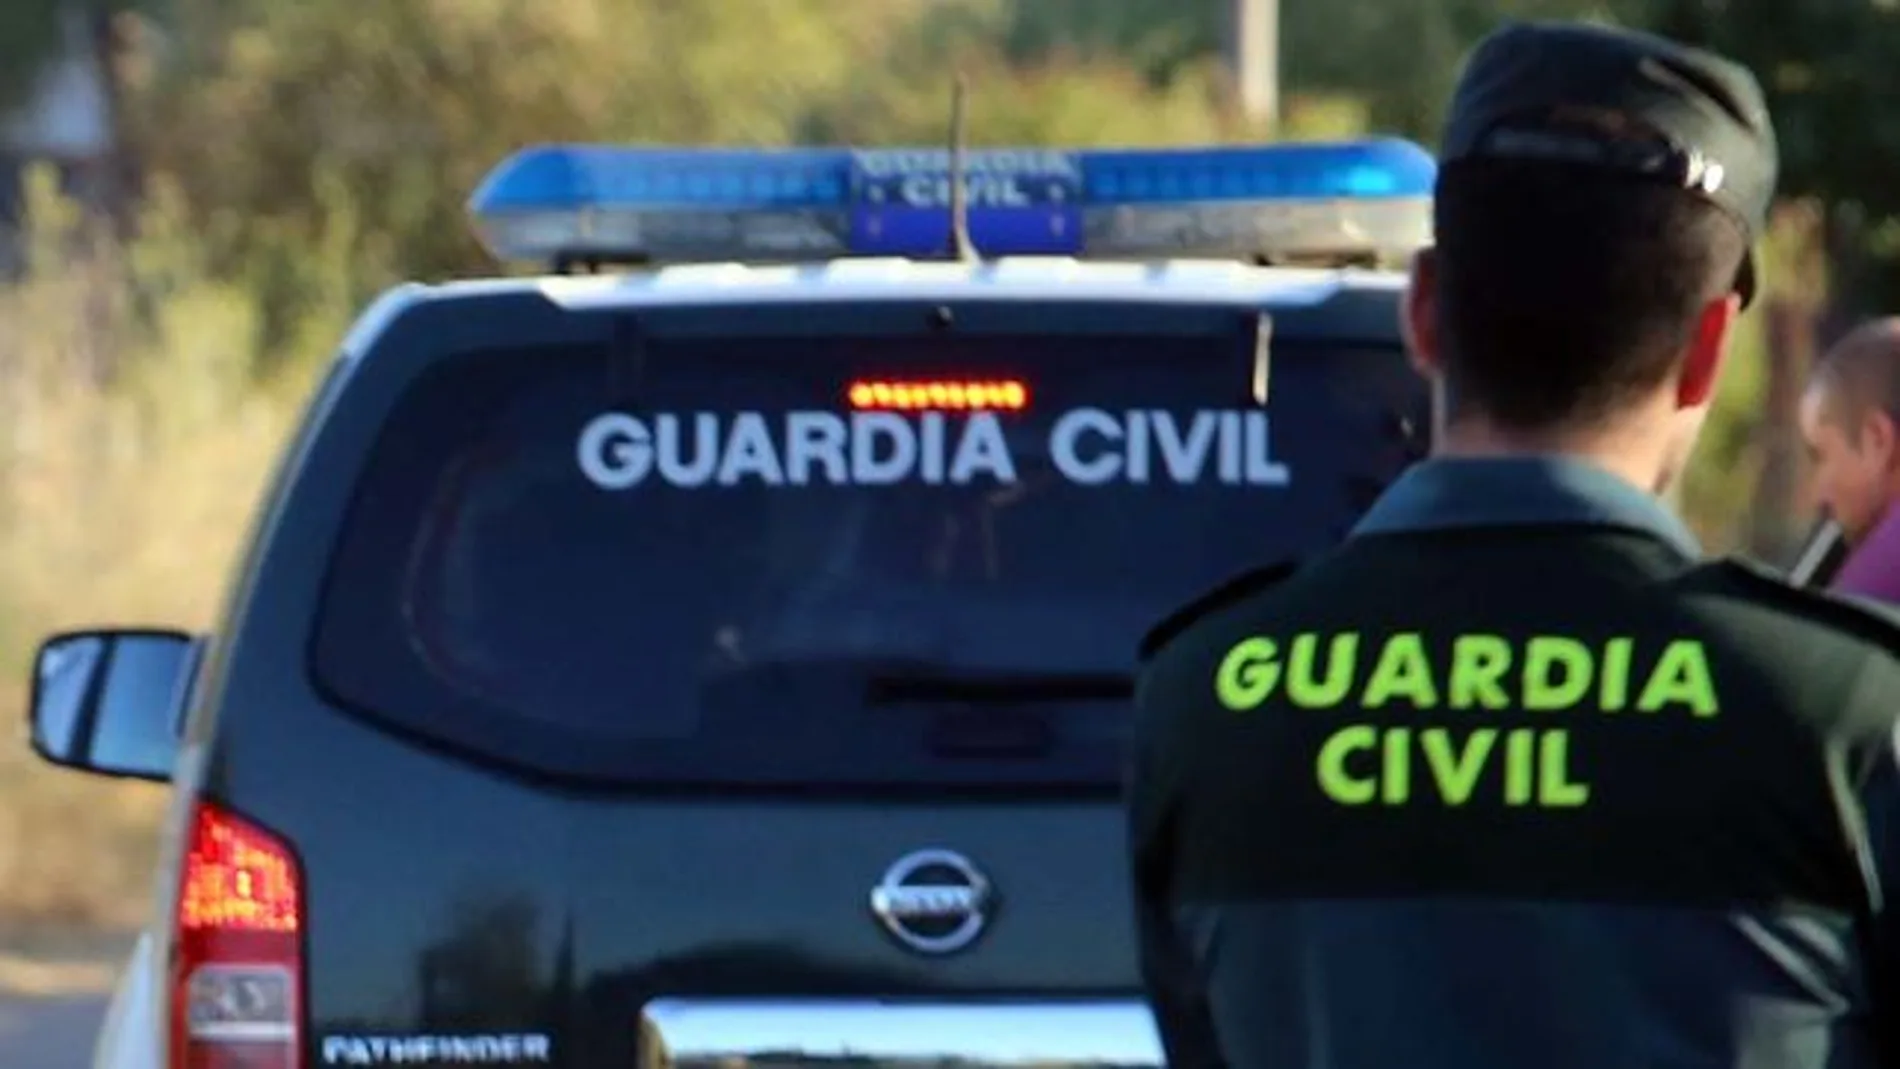 Los agentes de Guardia Civil, que prestaban servicio en la zona, fueron atacados tras intentar mediar en una pelea / Efe